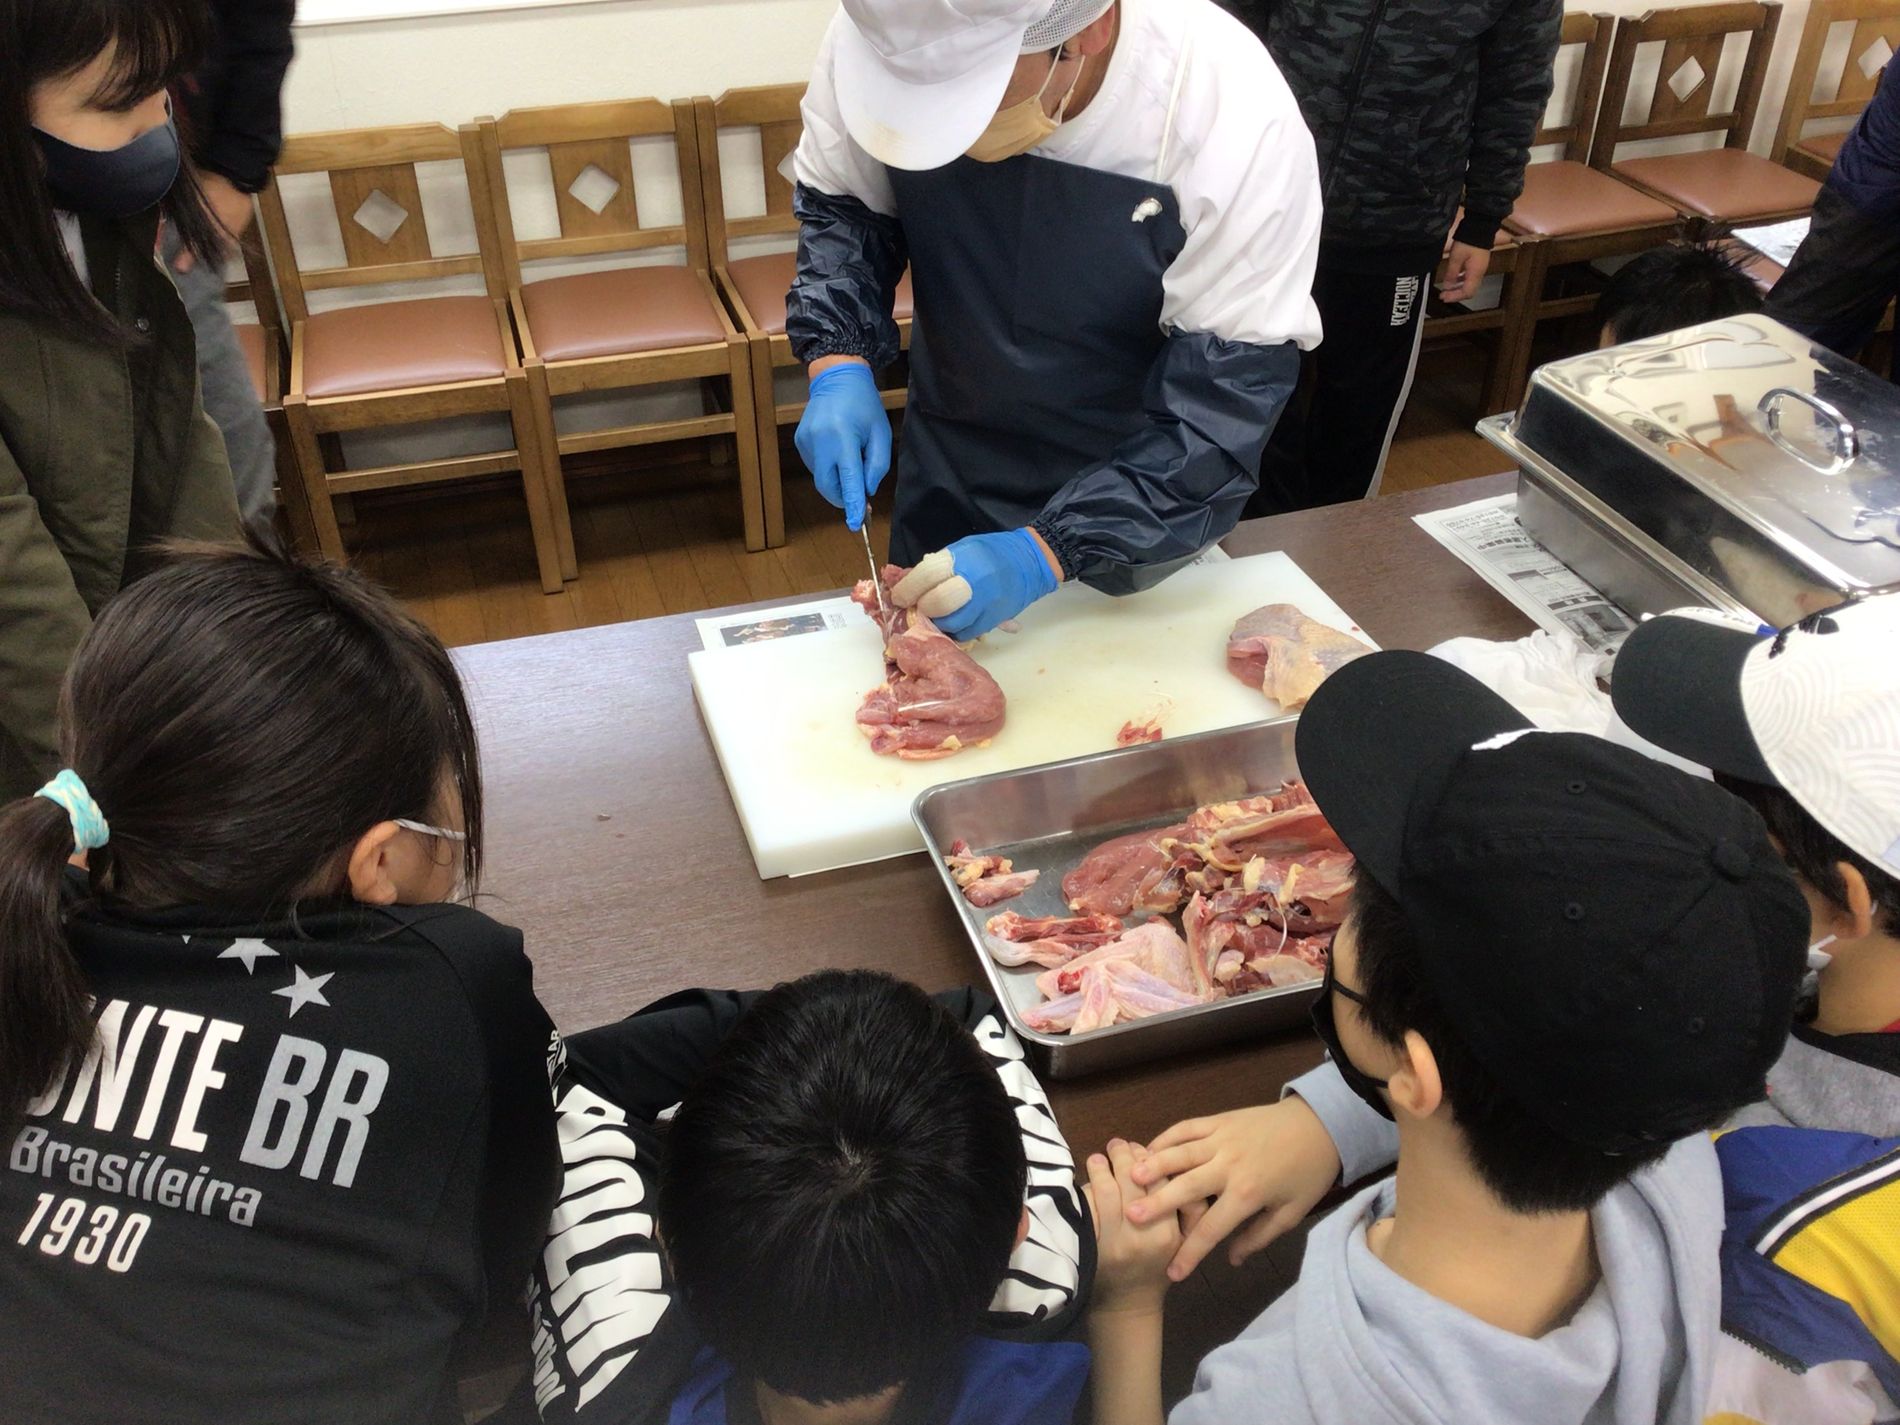 エプロンを付けた一人の男性が、包丁とまな板で生肉をさばいている様子を興味津々に見つめている子どもたちの写真